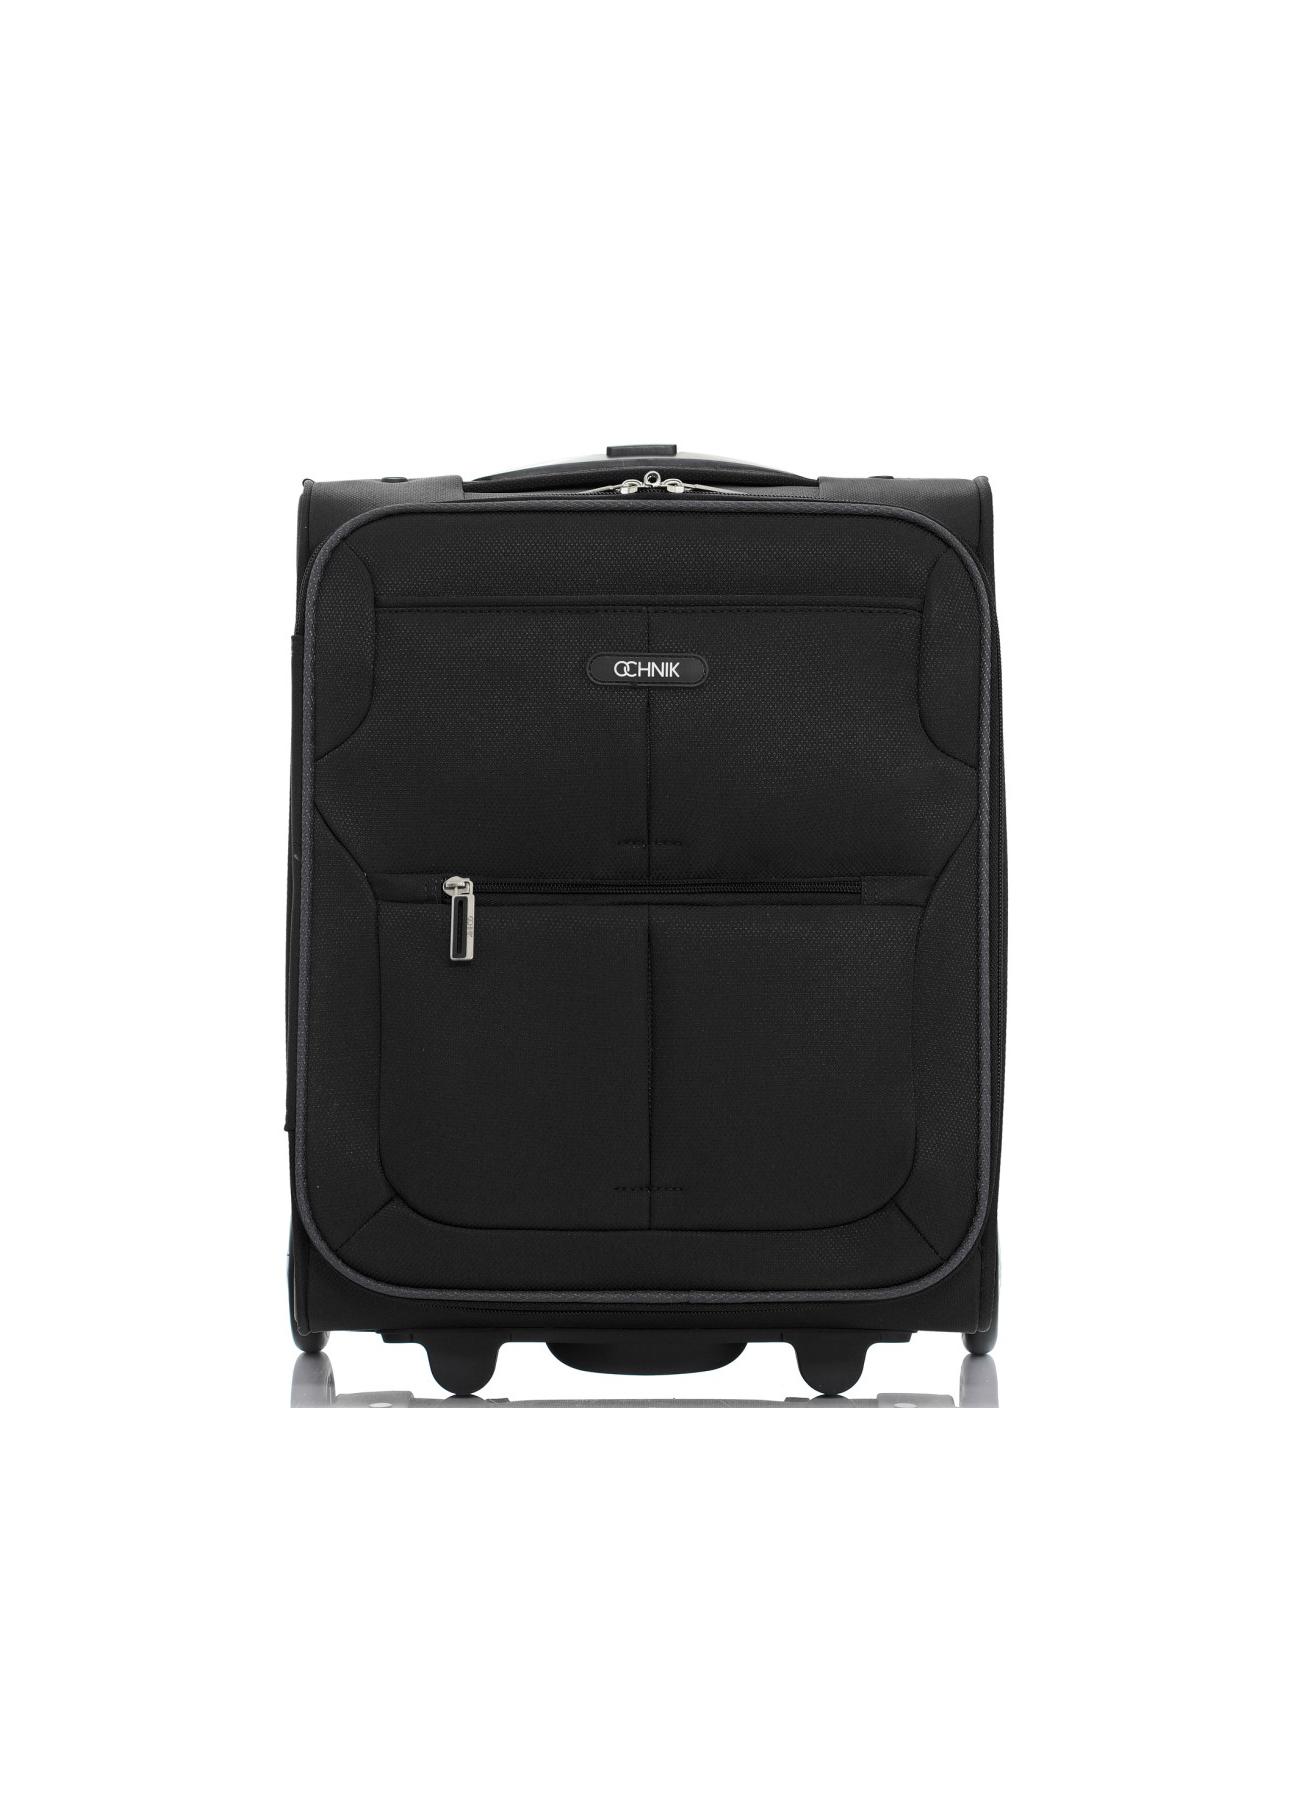 Mała walizka na kółkach WALNY-0016-99-16(ś)